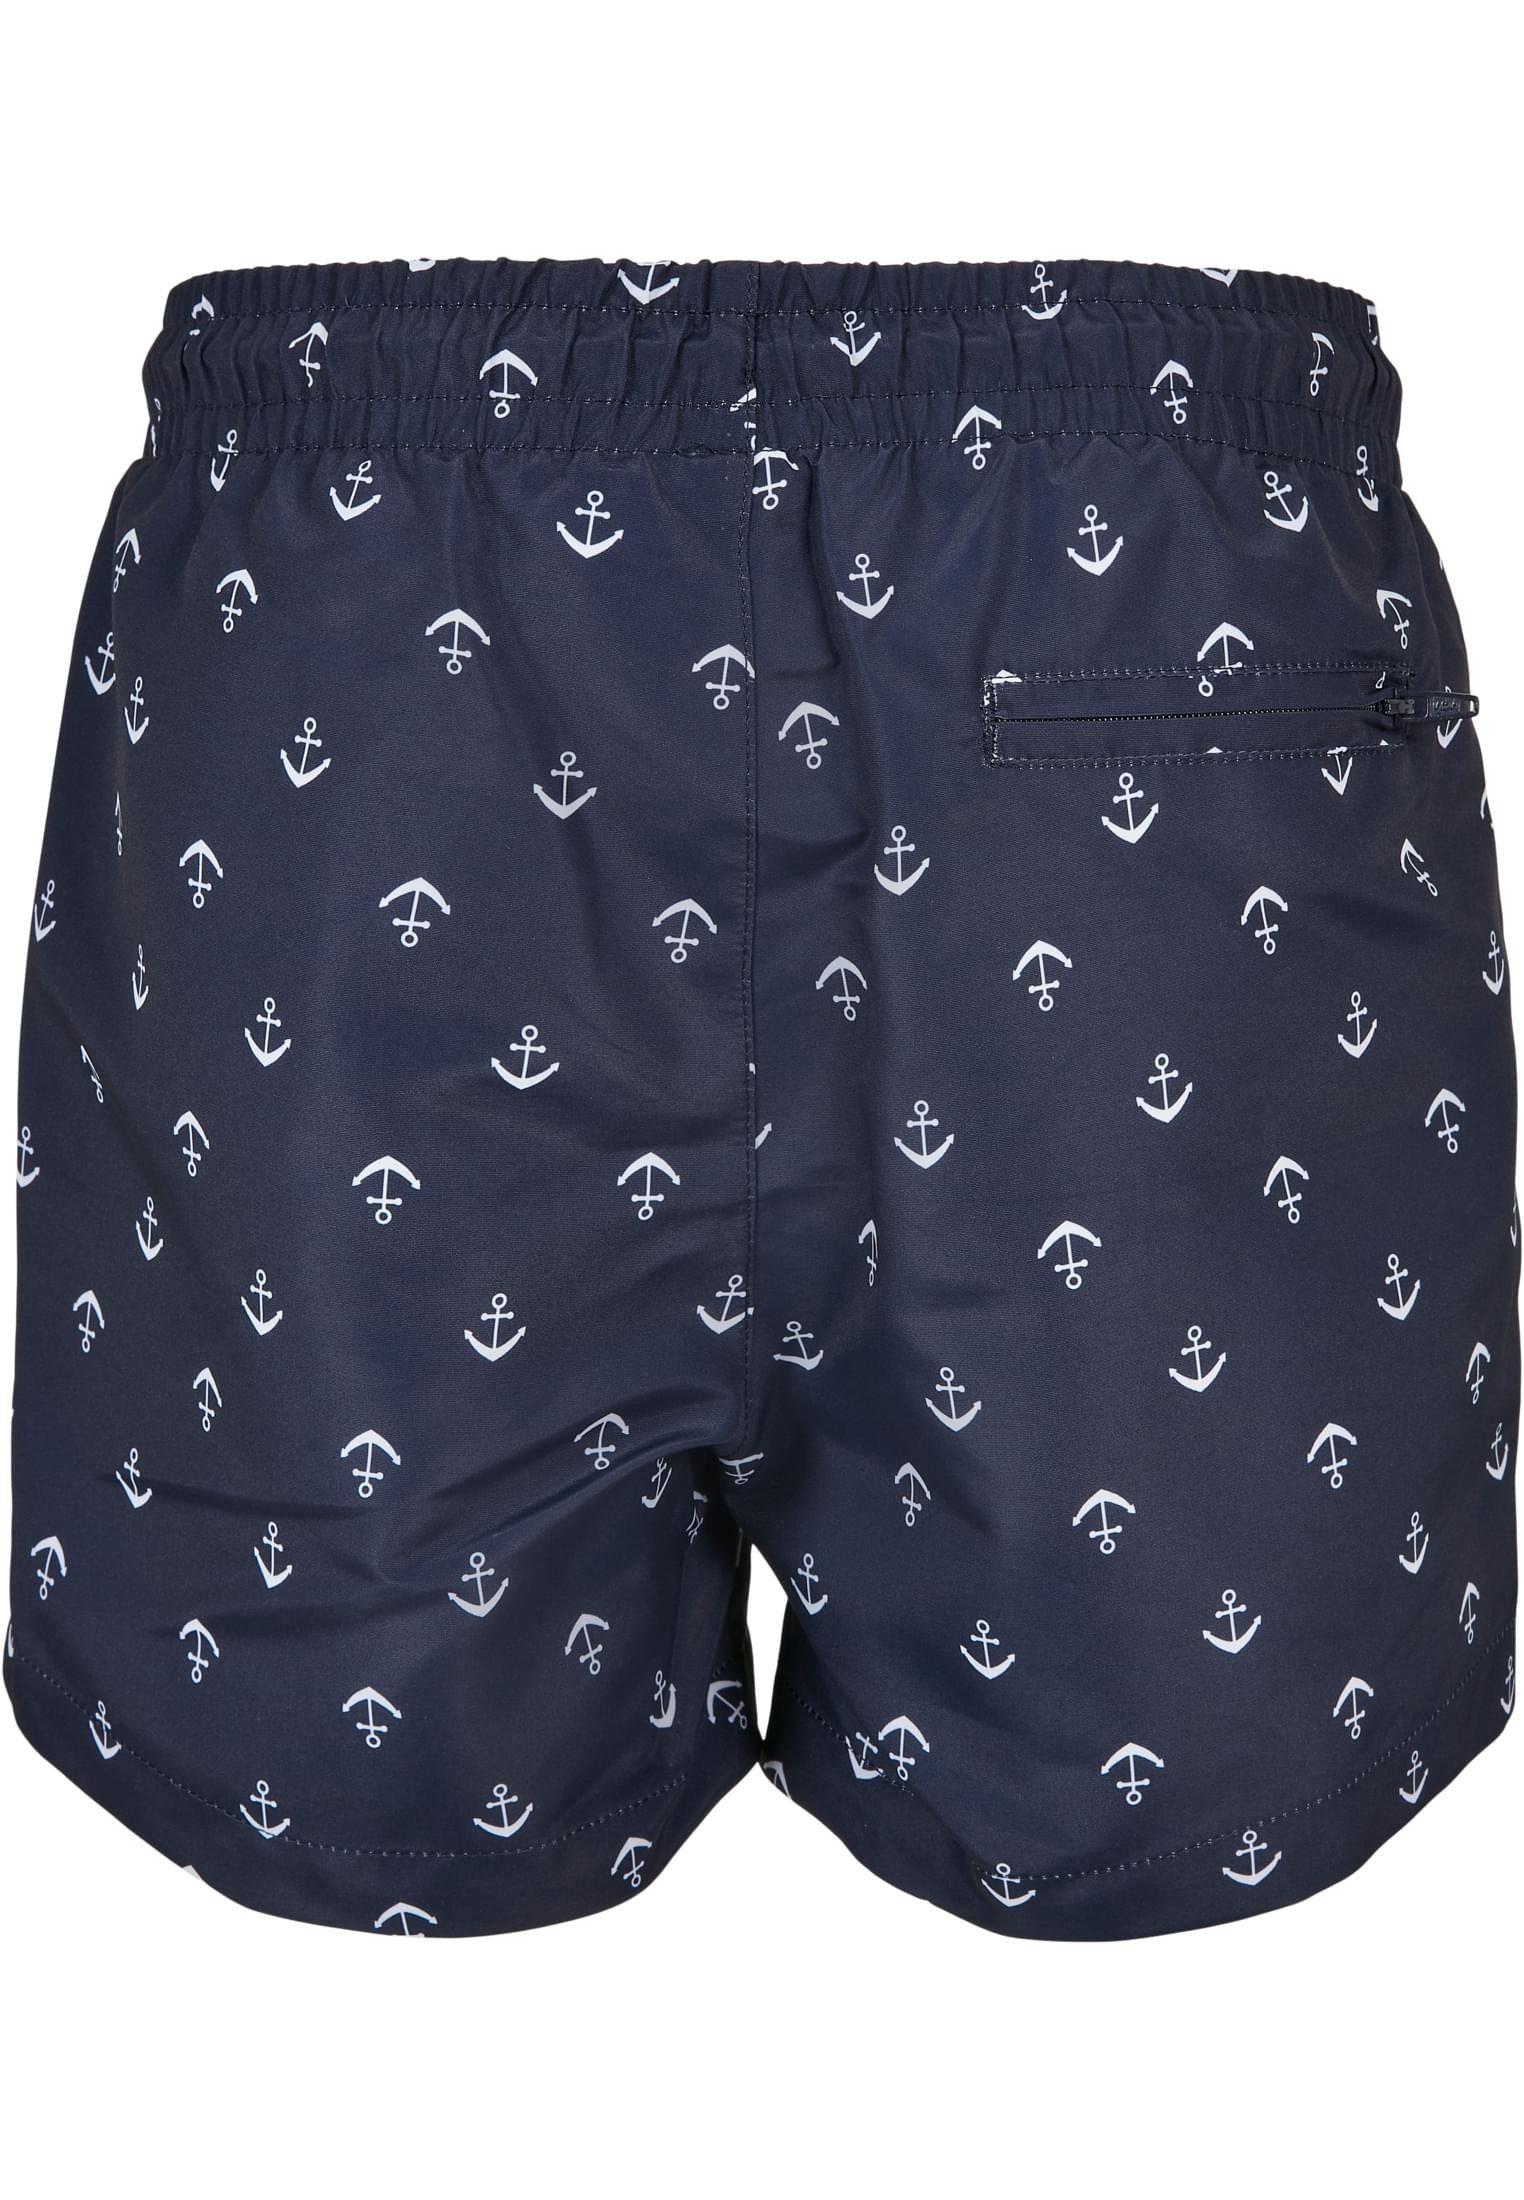 URBAN CLASSICS Badeshorts Boys Swim Herren anchor/navy Pattern Shorts